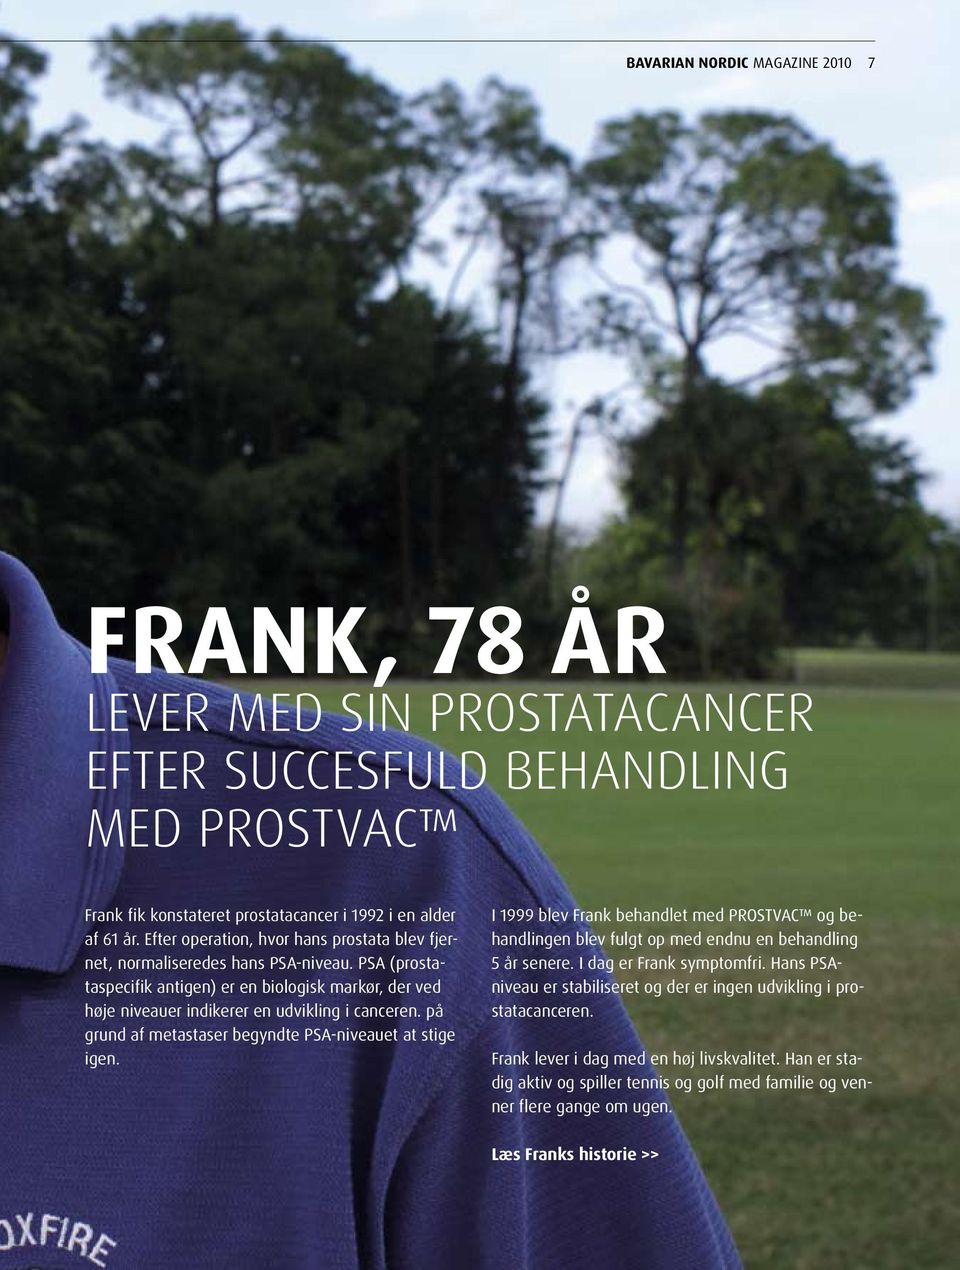 på grund af metastaser begyndte PSA-niveauet at stige igen. I 1999 blev Frank behandlet med PROSTVAC og behandlingen blev fulgt op med endnu en behandling 5 år senere. I dag er Frank symptomfri.